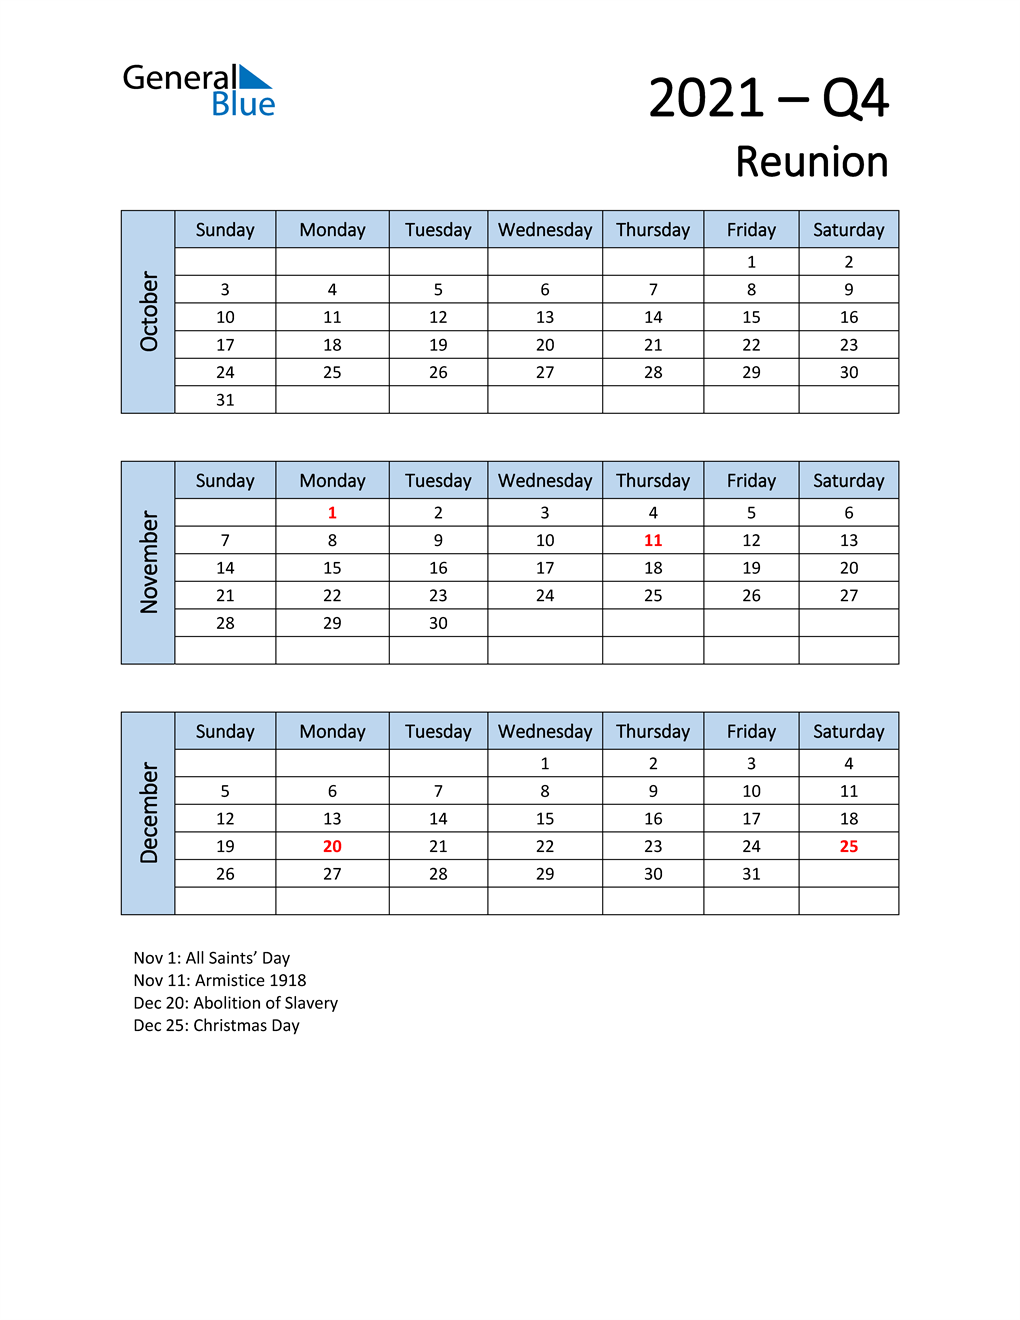  Free Q4 2021 Calendar for Reunion